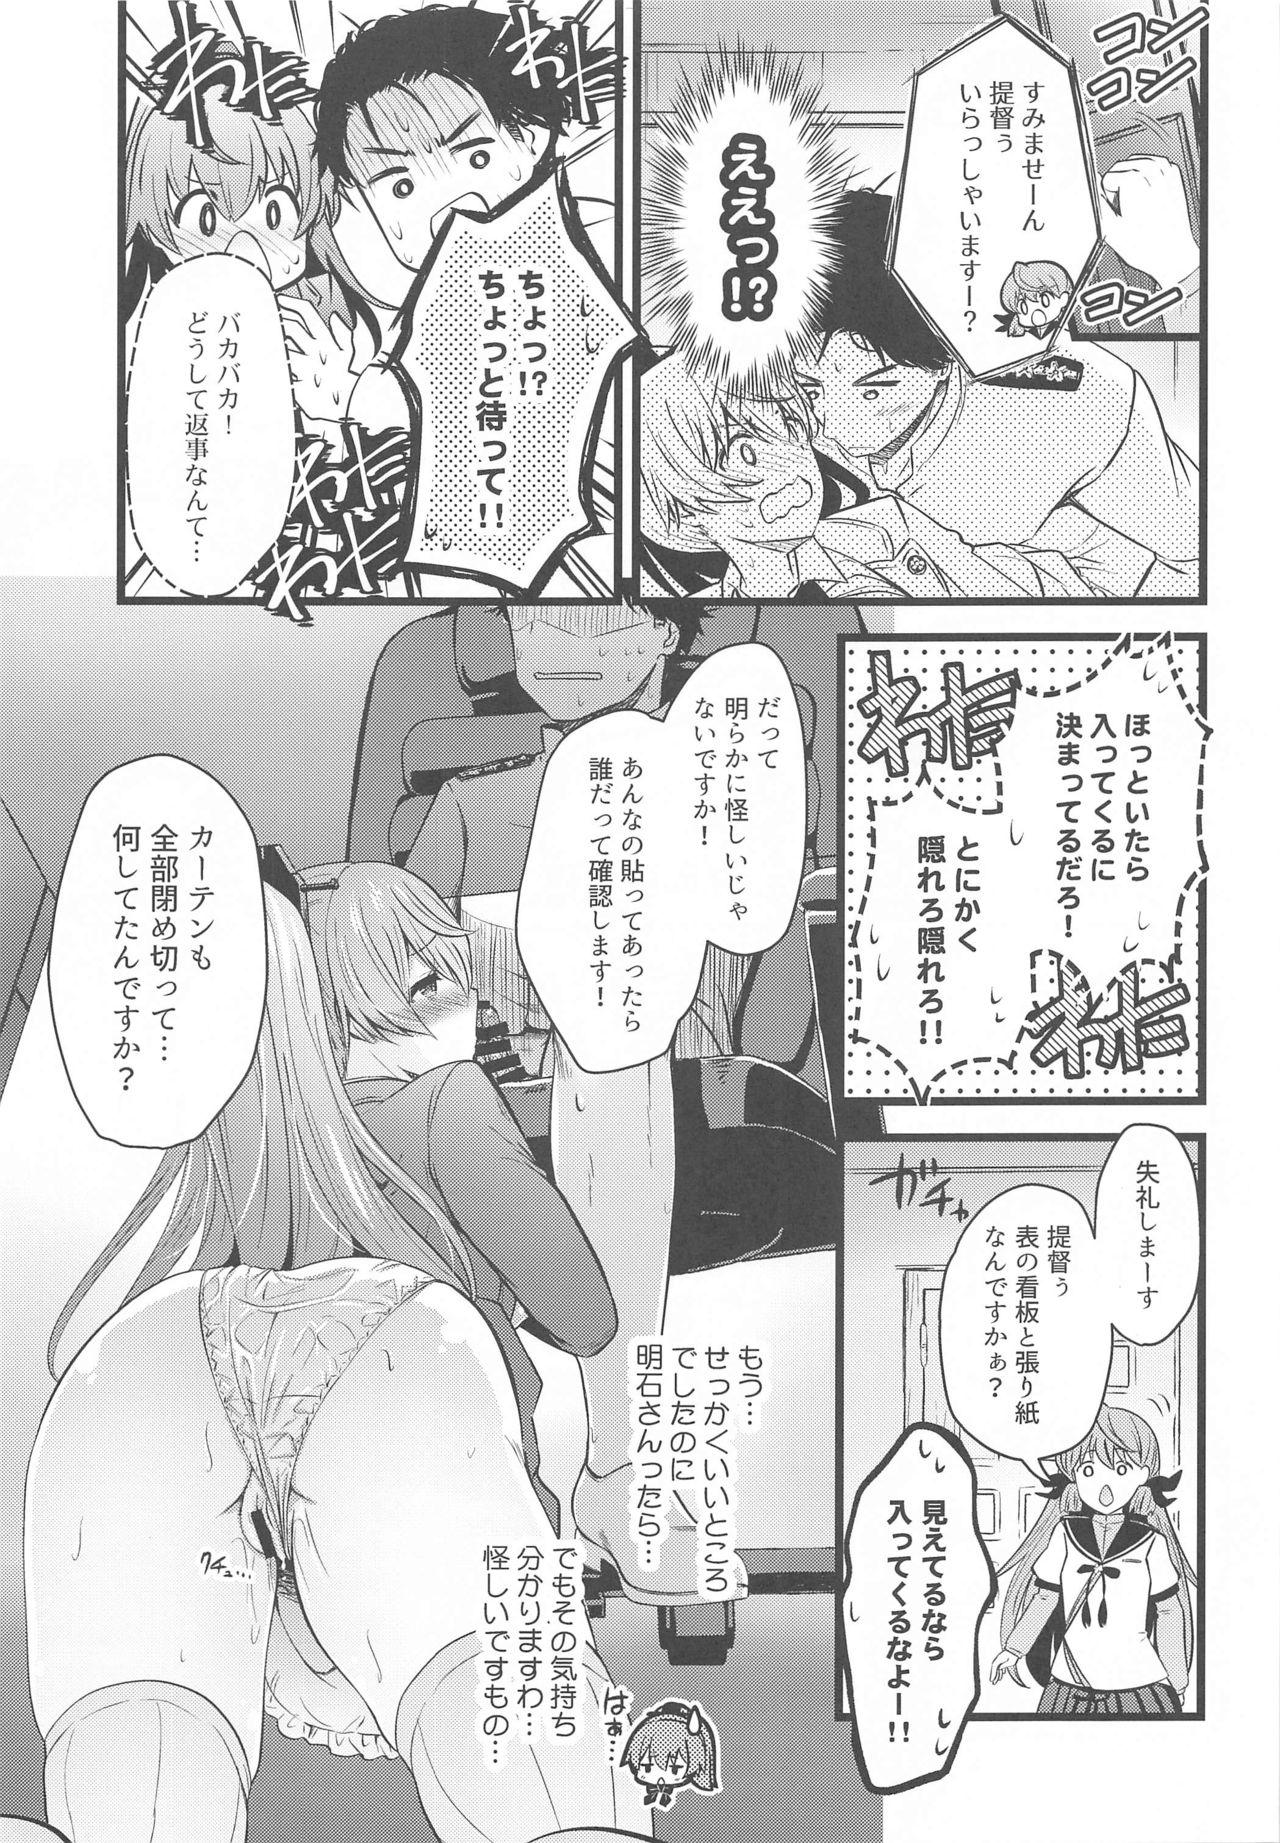 Chibola Kumano no +1 - Kantai collection Boy Girl - Page 8